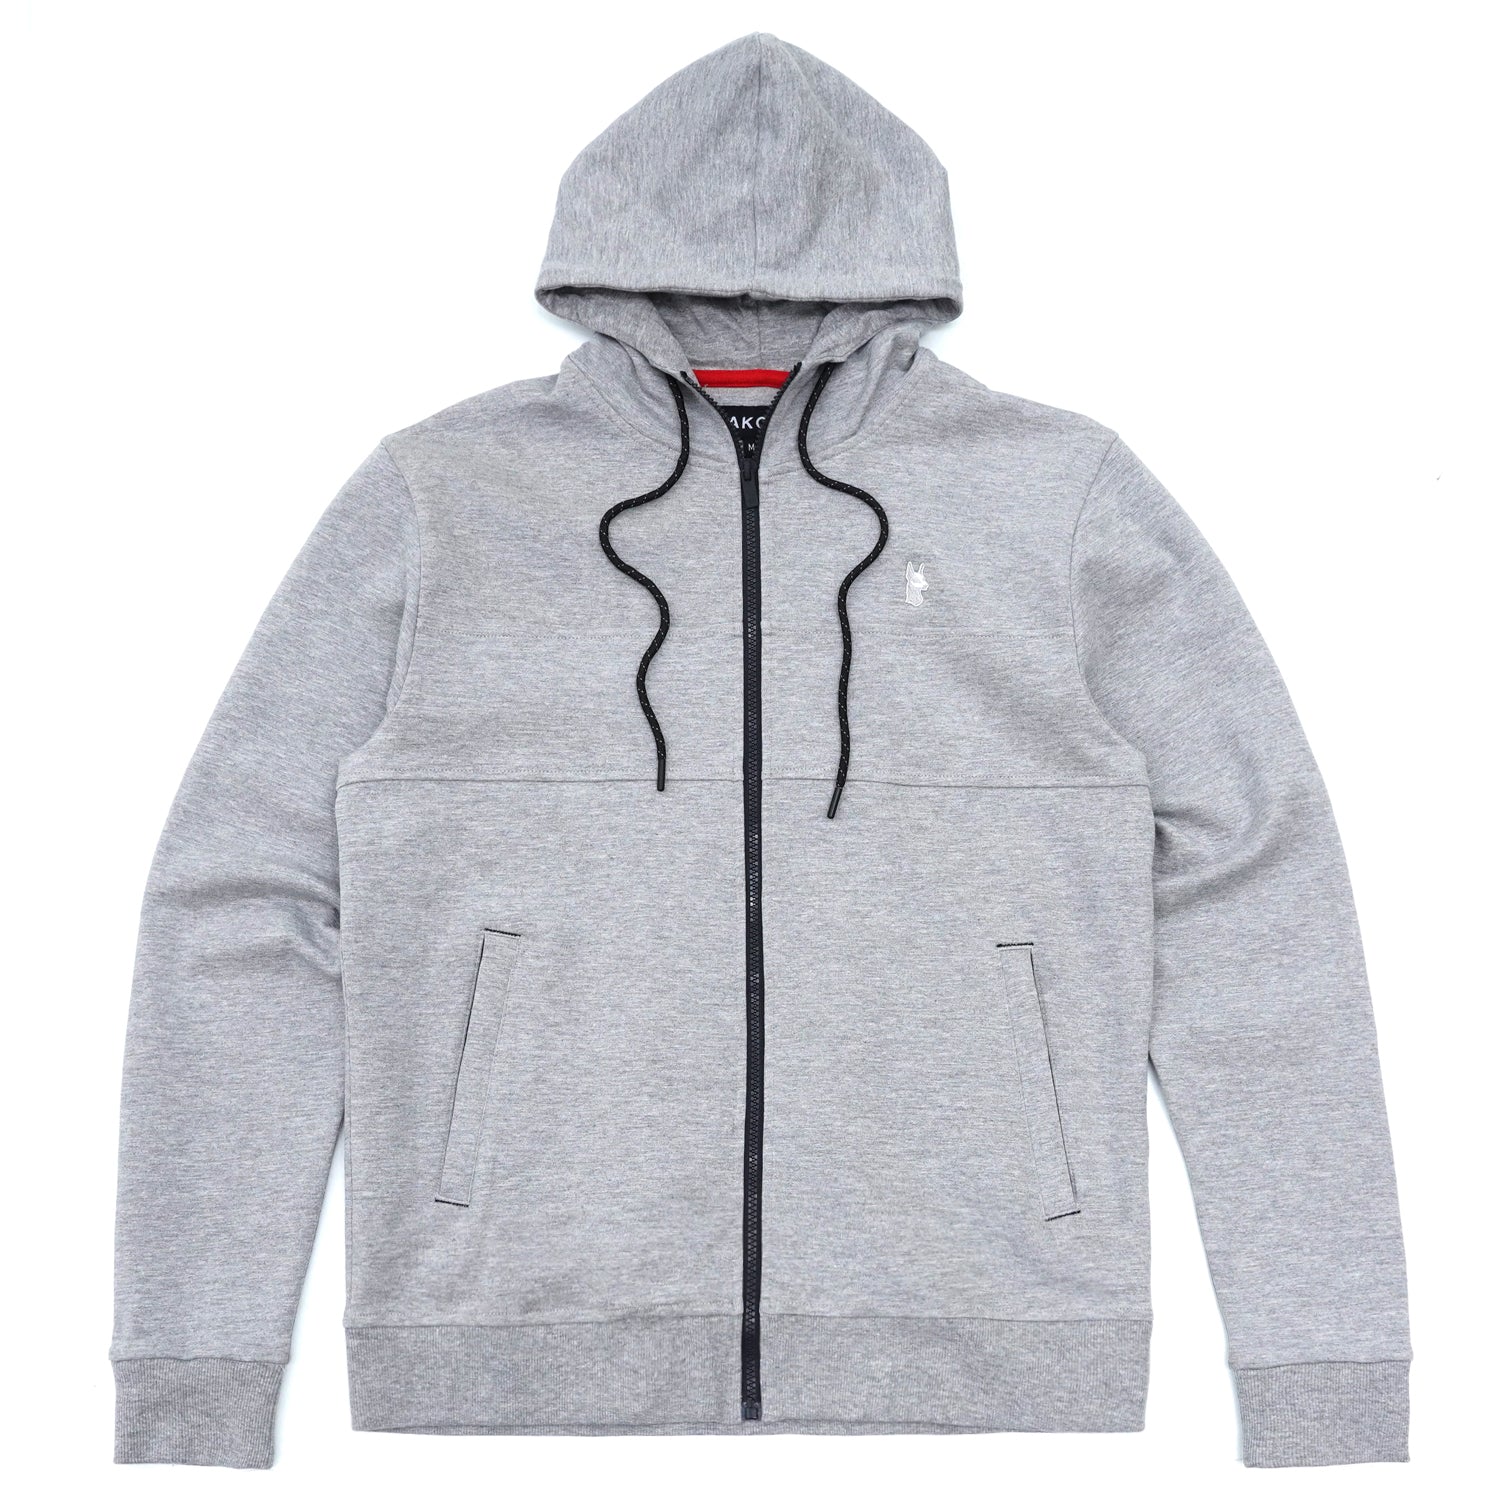 M3707 Tech Fleece Zip Up Hoodie Set - Gray